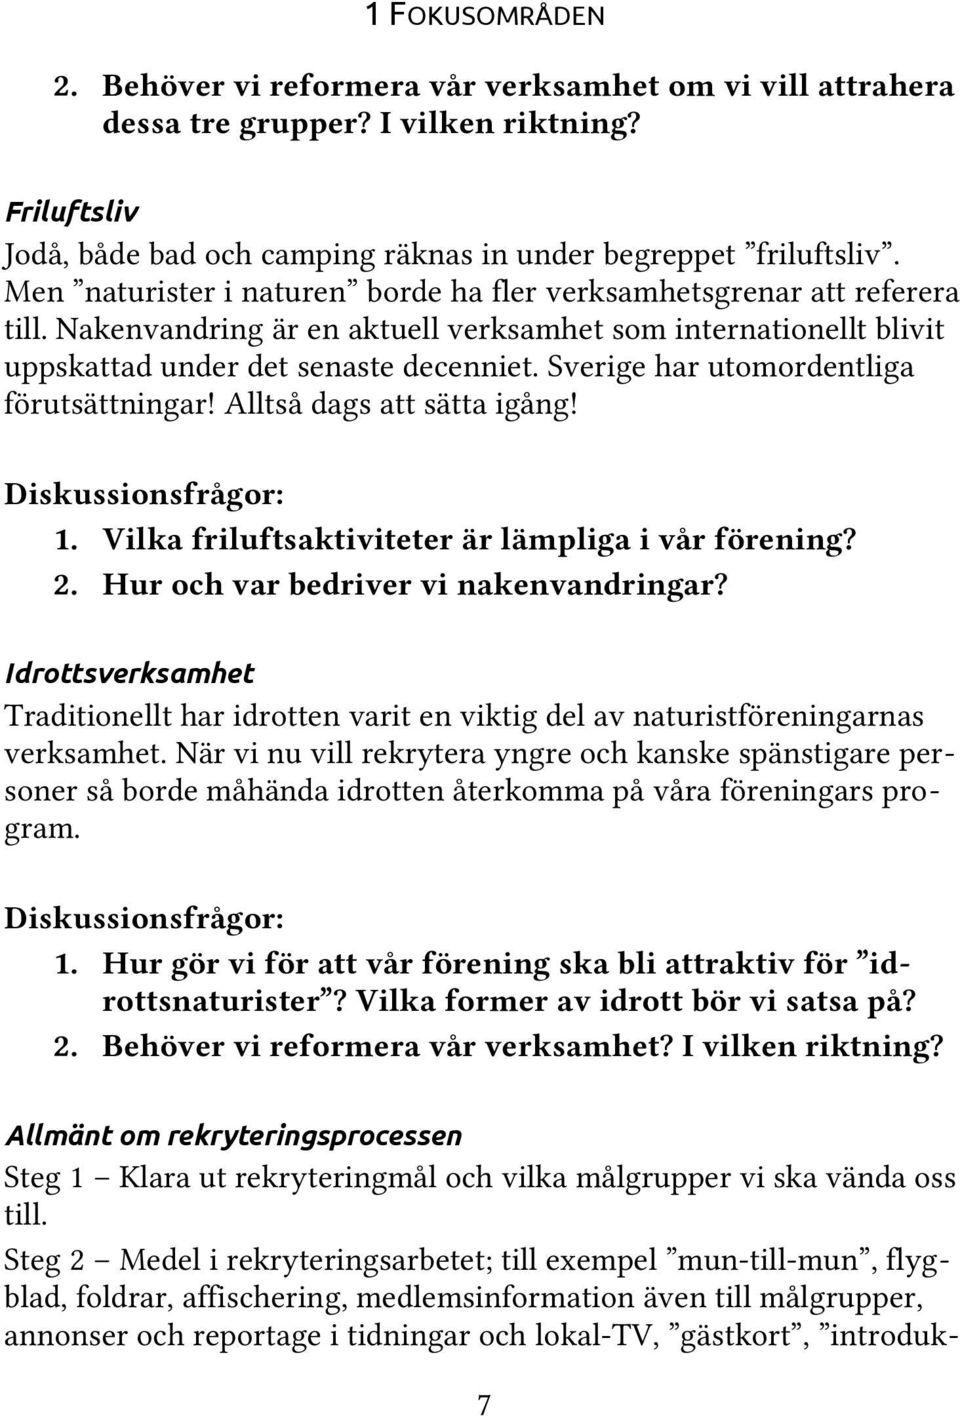 Sverige har utomordentliga förutsättningar! Alltså dags att sätta igång! Diskussionsfrågor: 1. Vilka friluftsaktiviteter är lämpliga i vår förening? 2. Hur och var bedriver vi nakenvandringar?